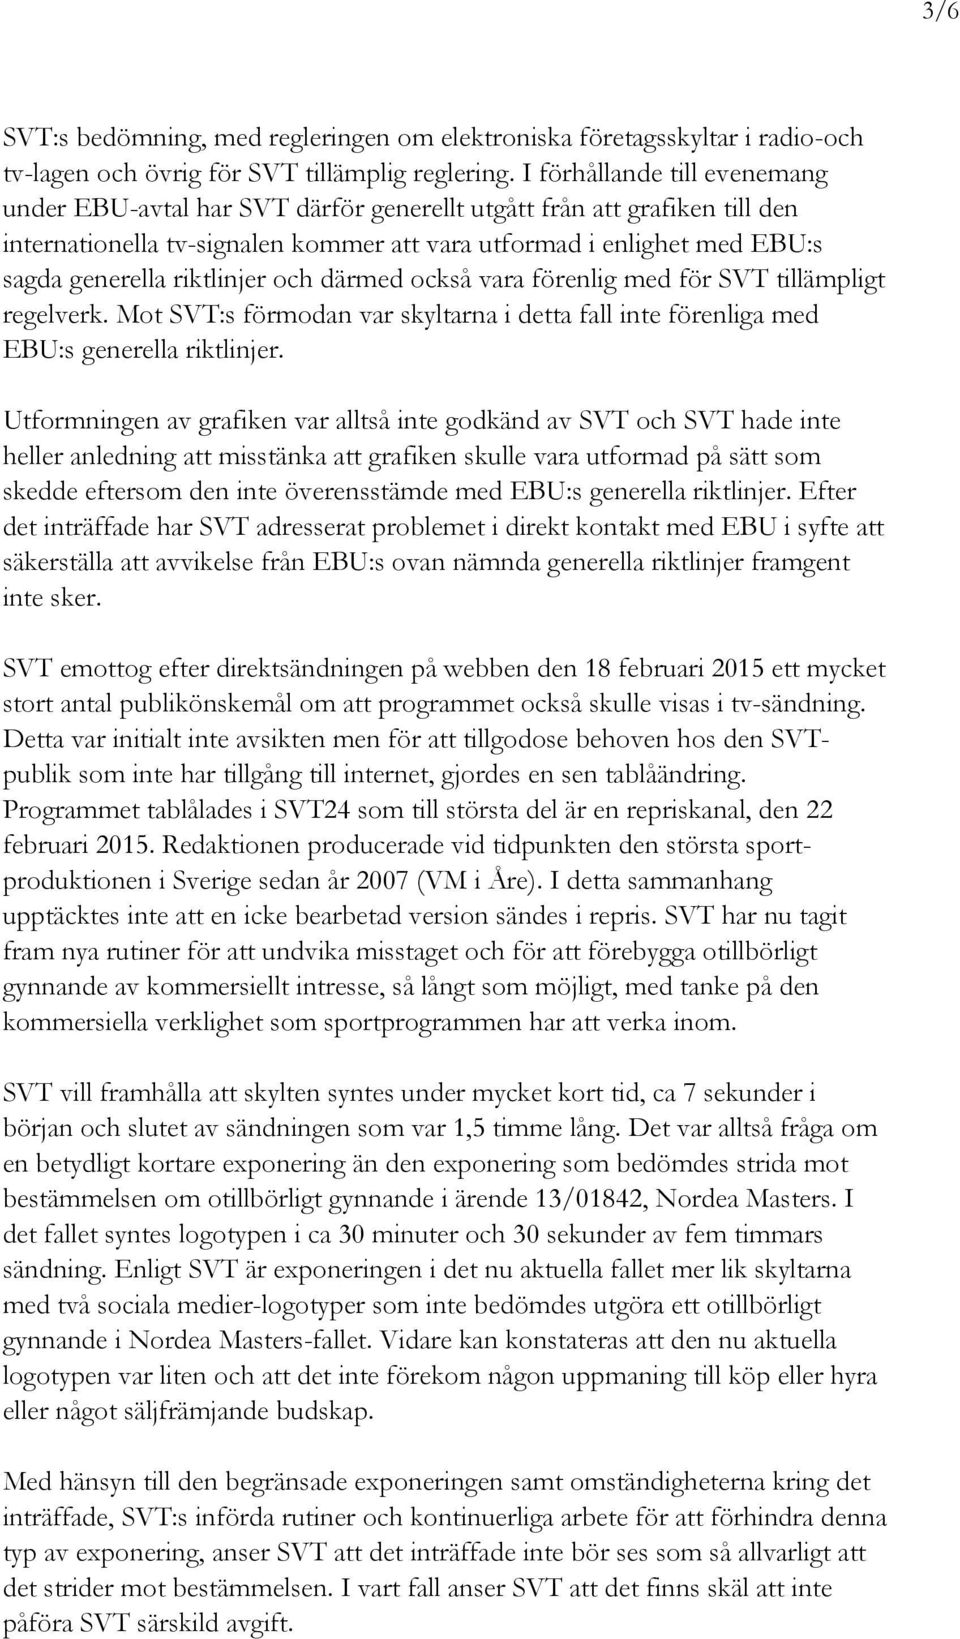 riktlinjer och därmed också vara förenlig med för SVT tillämpligt regelverk. Mot SVT:s förmodan var skyltarna i detta fall inte förenliga med EBU:s generella riktlinjer.